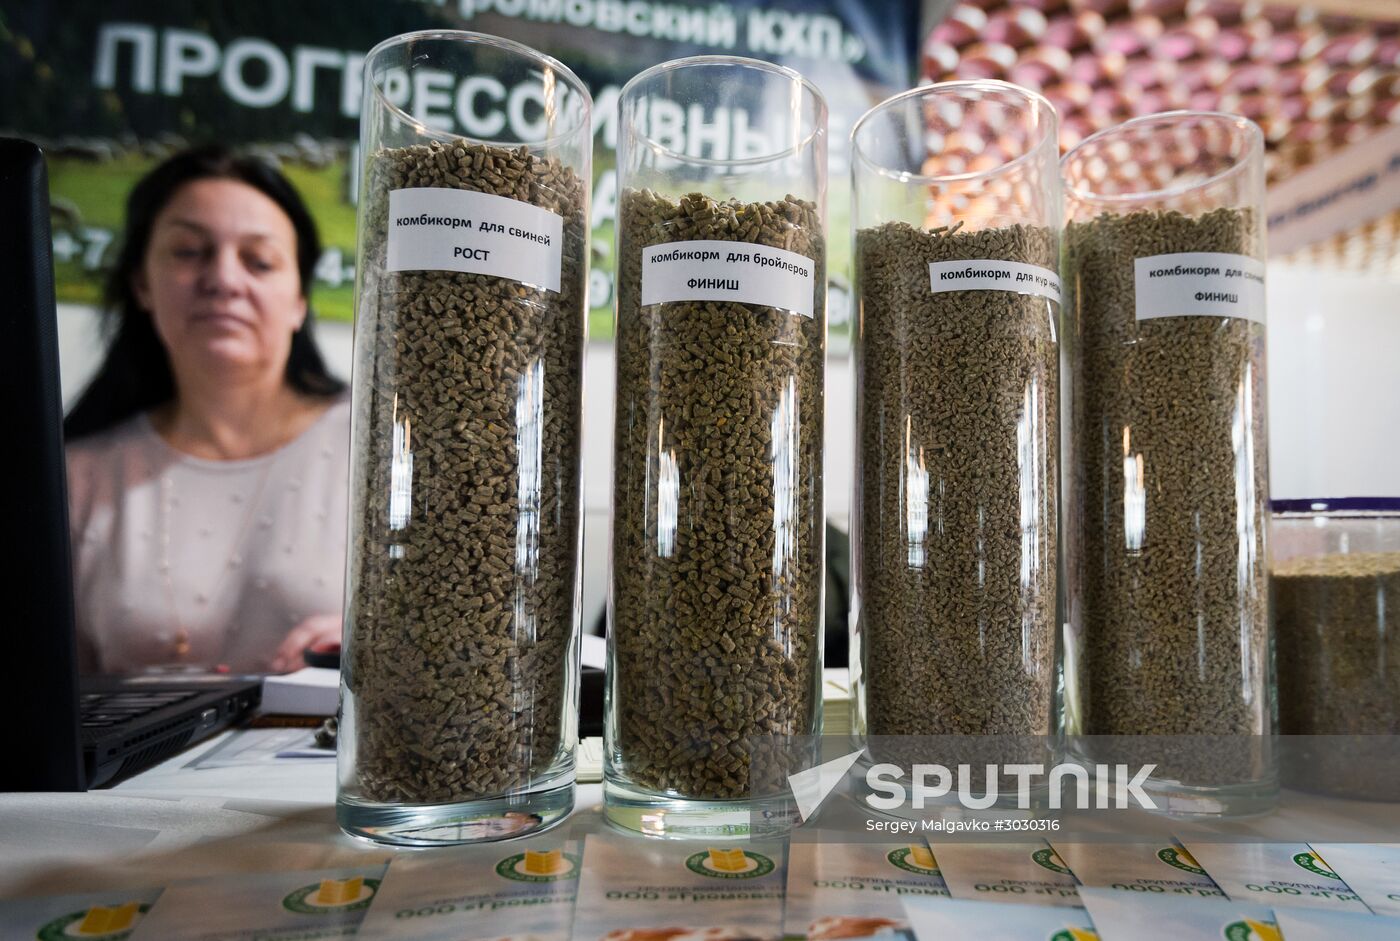 AgroExpoKrym exhibition in Yalta